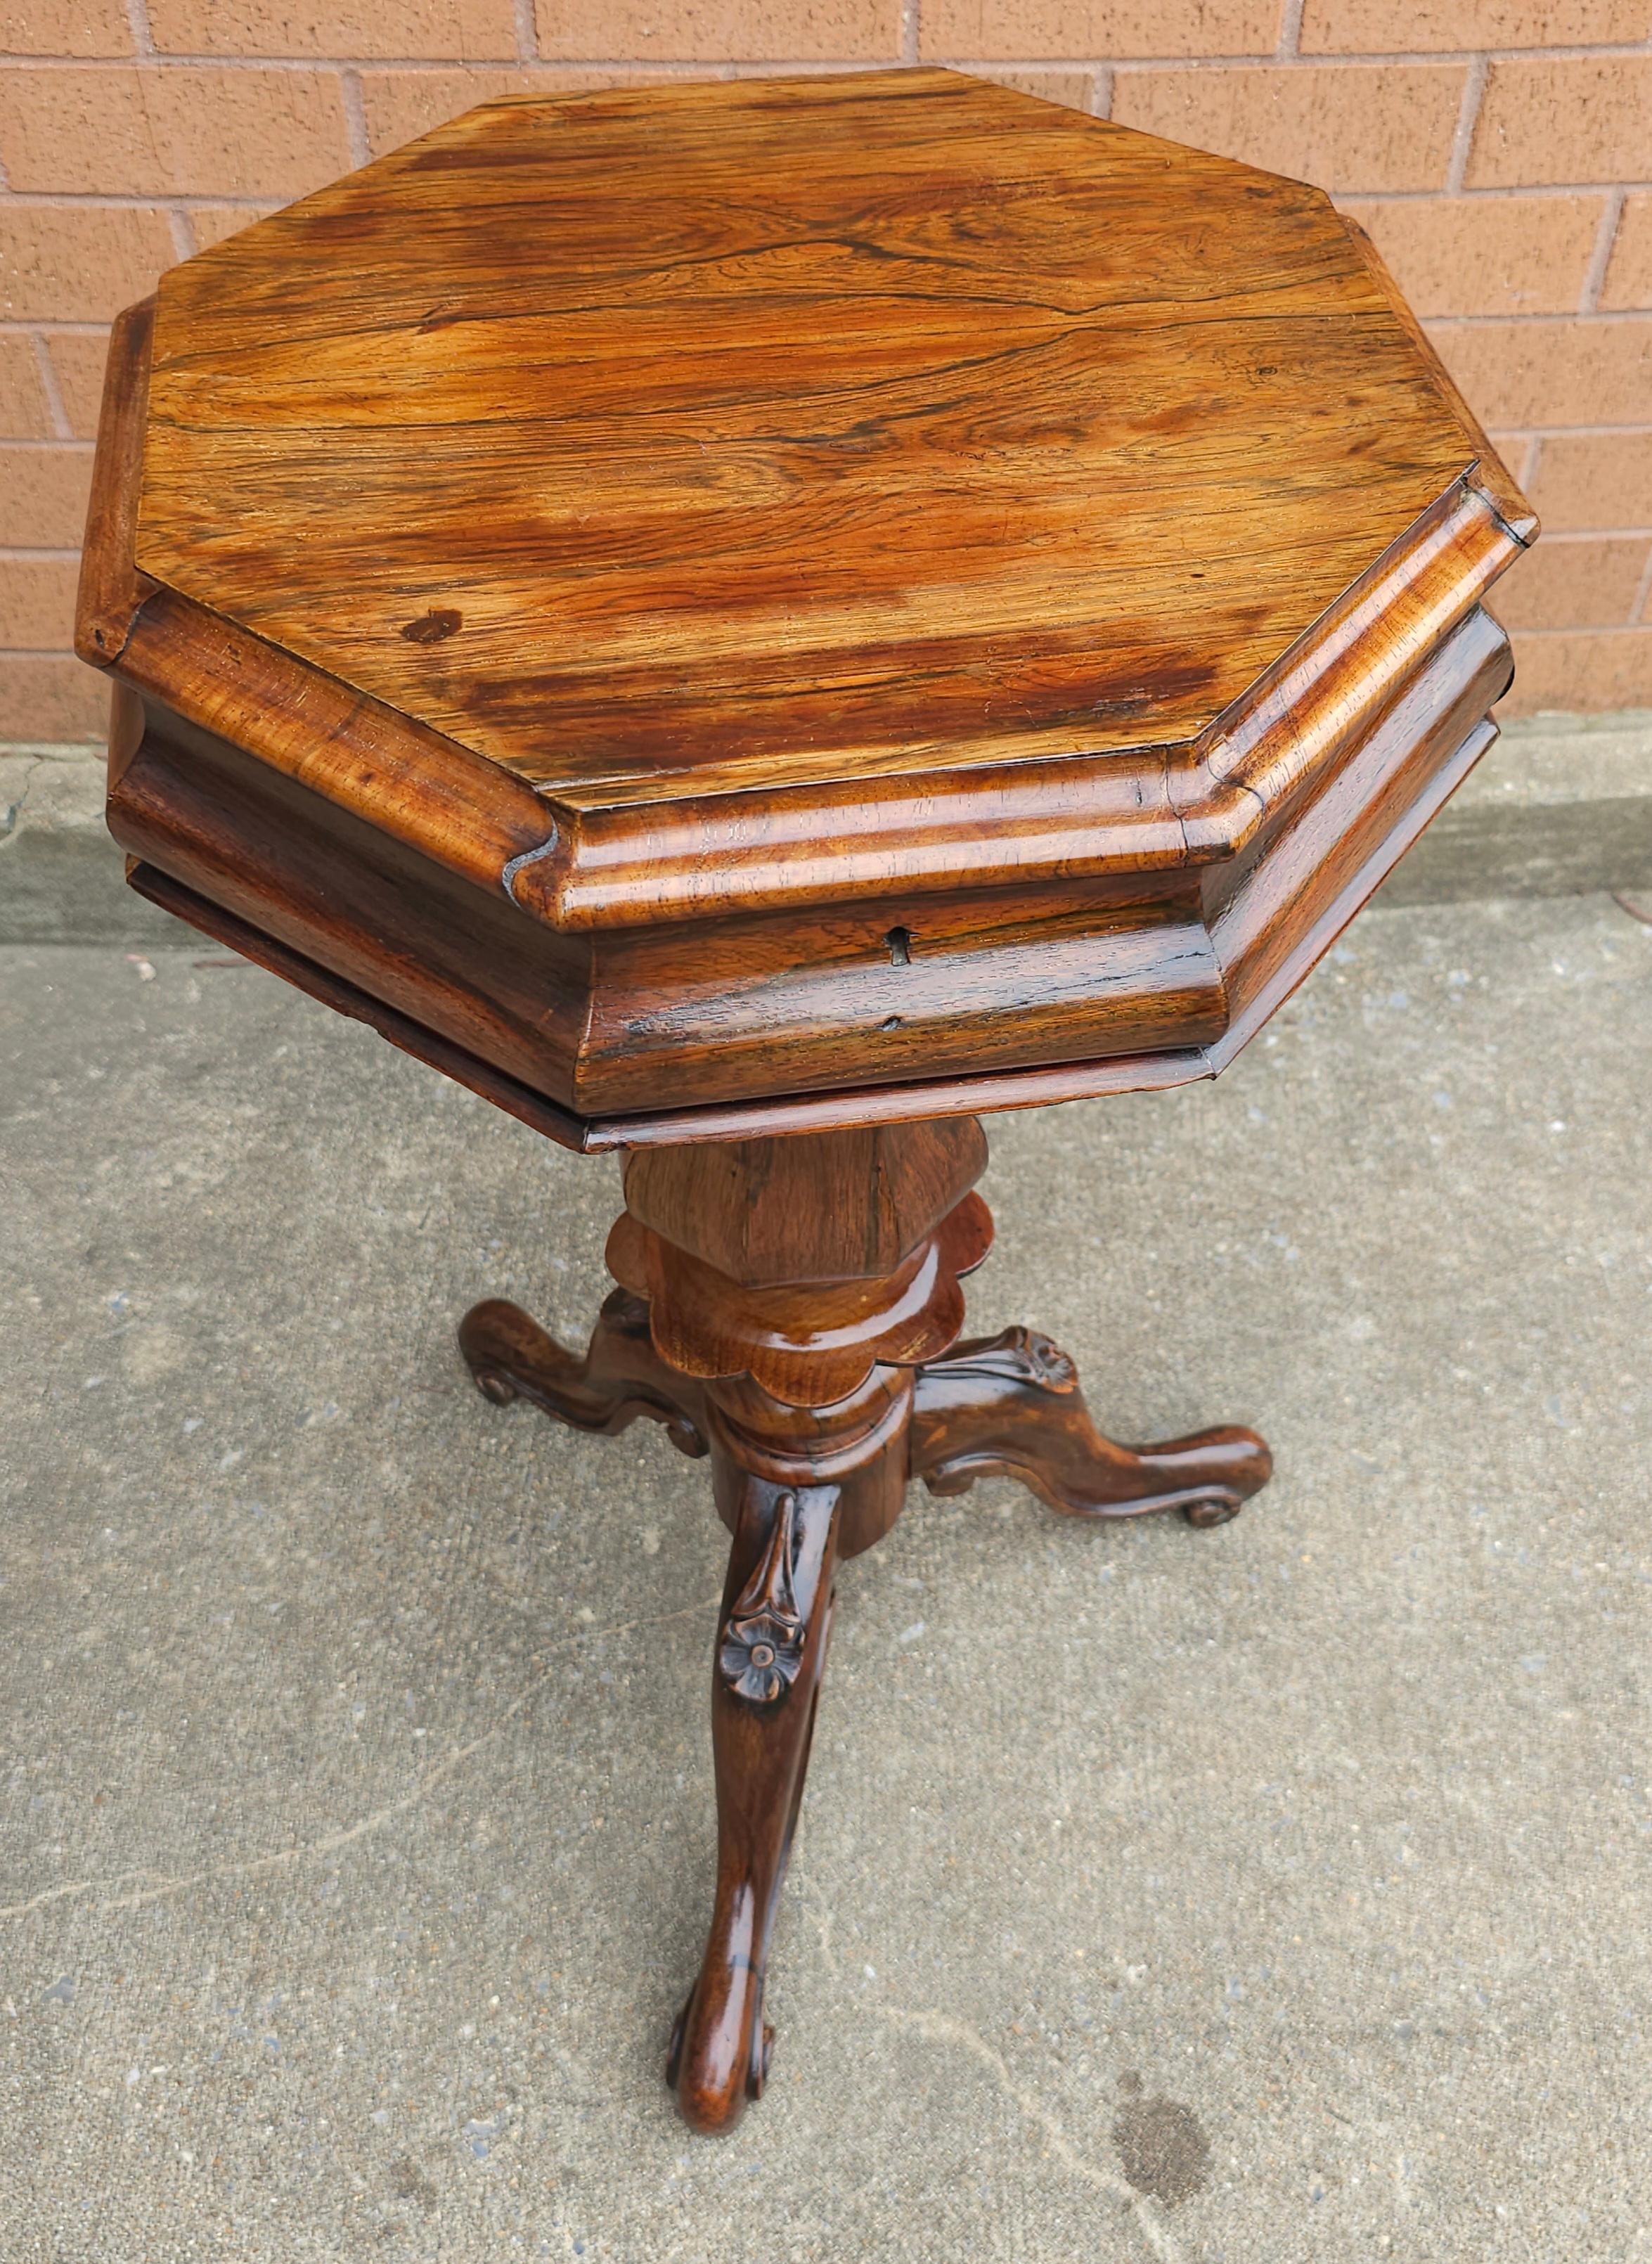 Ein 19. Jahrhundert viktorianischen Rokoko-Revival Palisander Dreibein Stand Tisch nähen. 
Der Nähständer öffnet sich und gibt den Blick auf ein zentrales karminrotes Jacquard-Seidenpad frei, das von vier abgestuften Fächern flankiert wird.
Misst